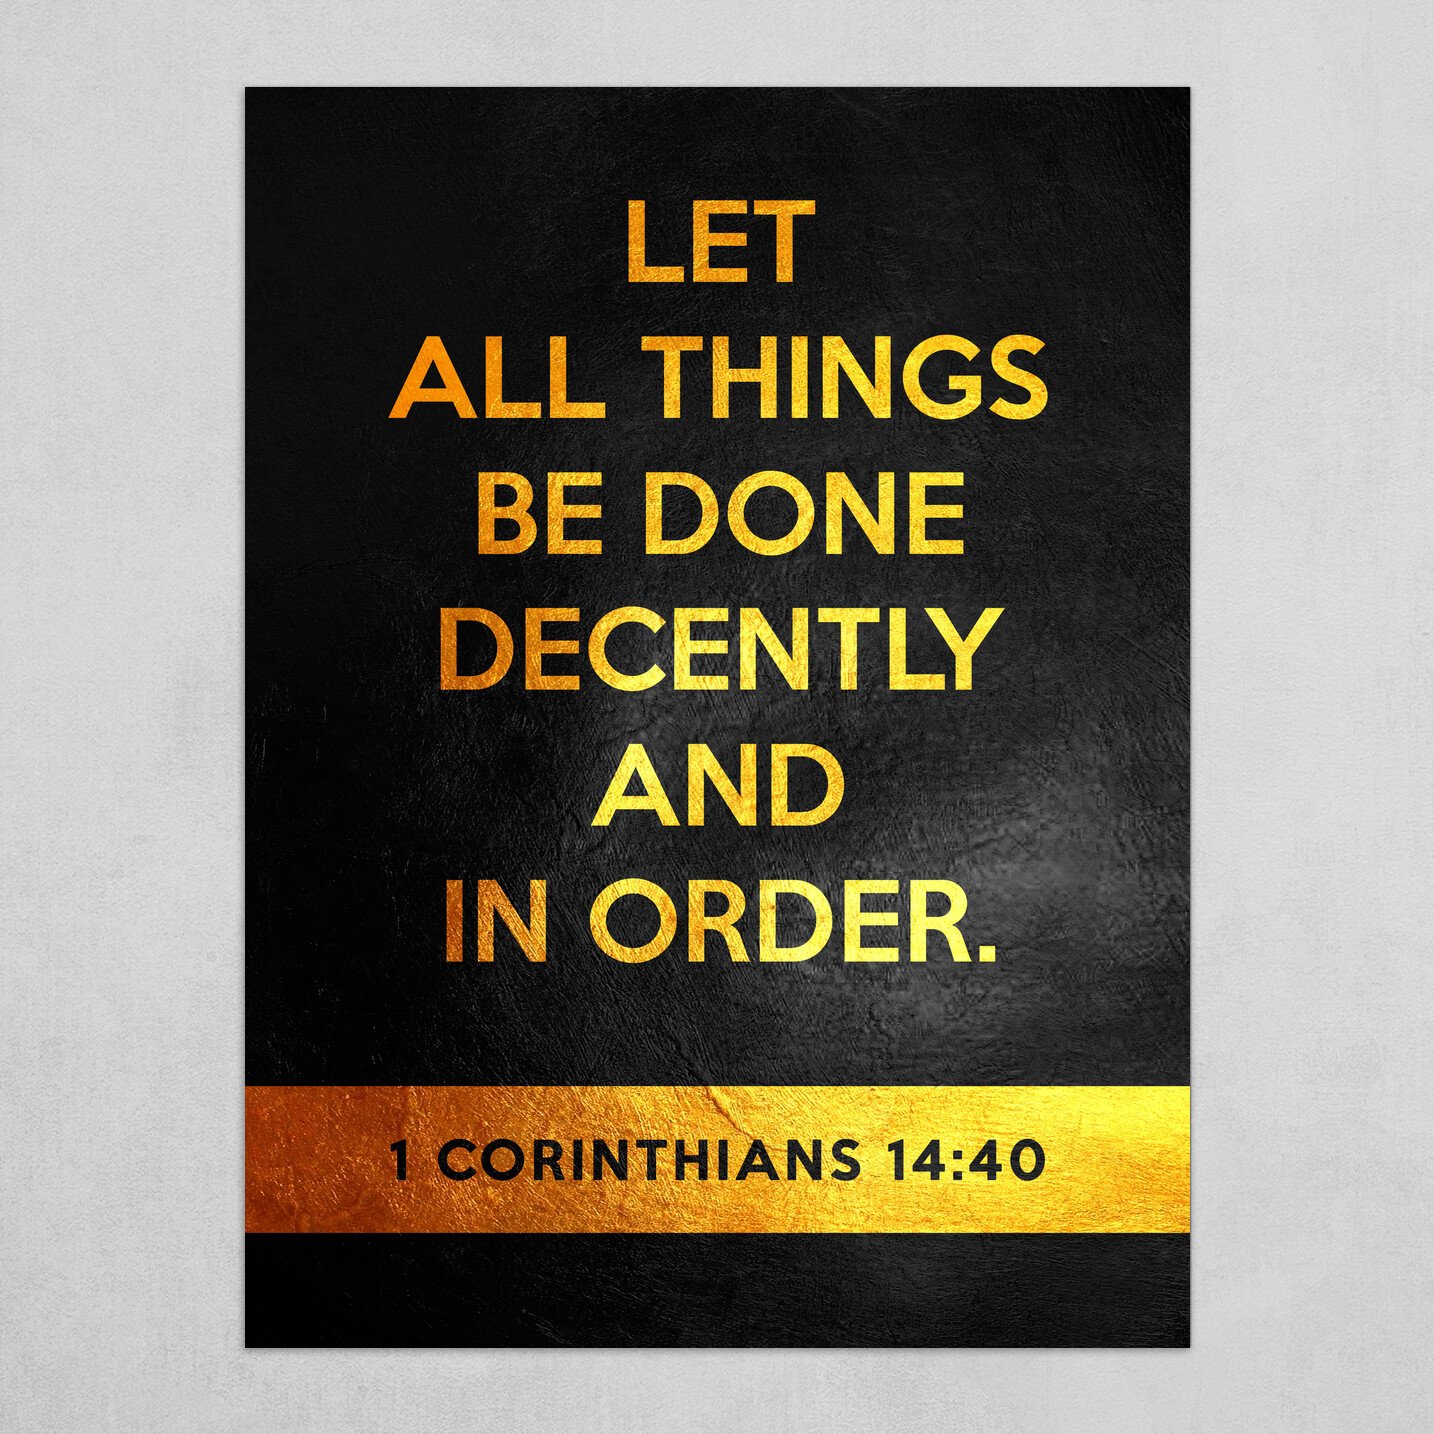 1 Corinthians 14:40 Bible Verse Text Art